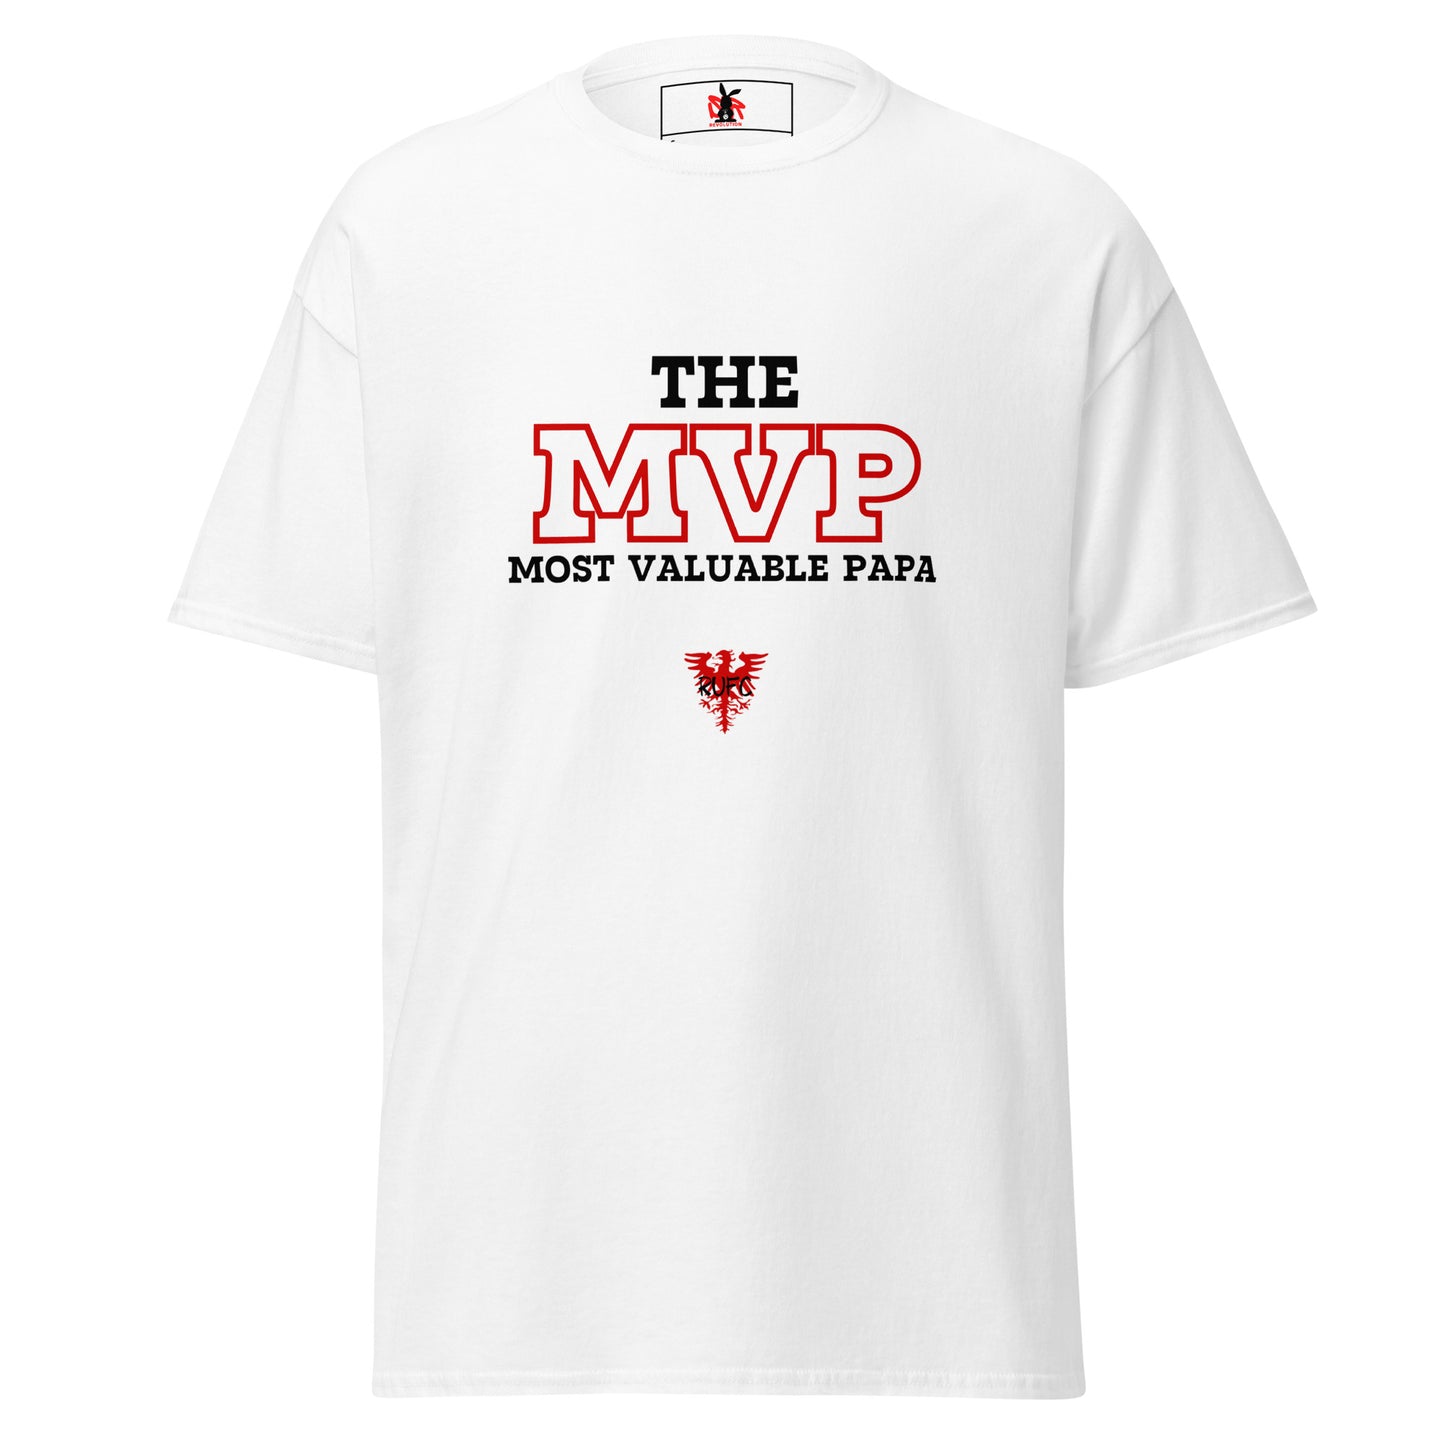 The MVP Tee